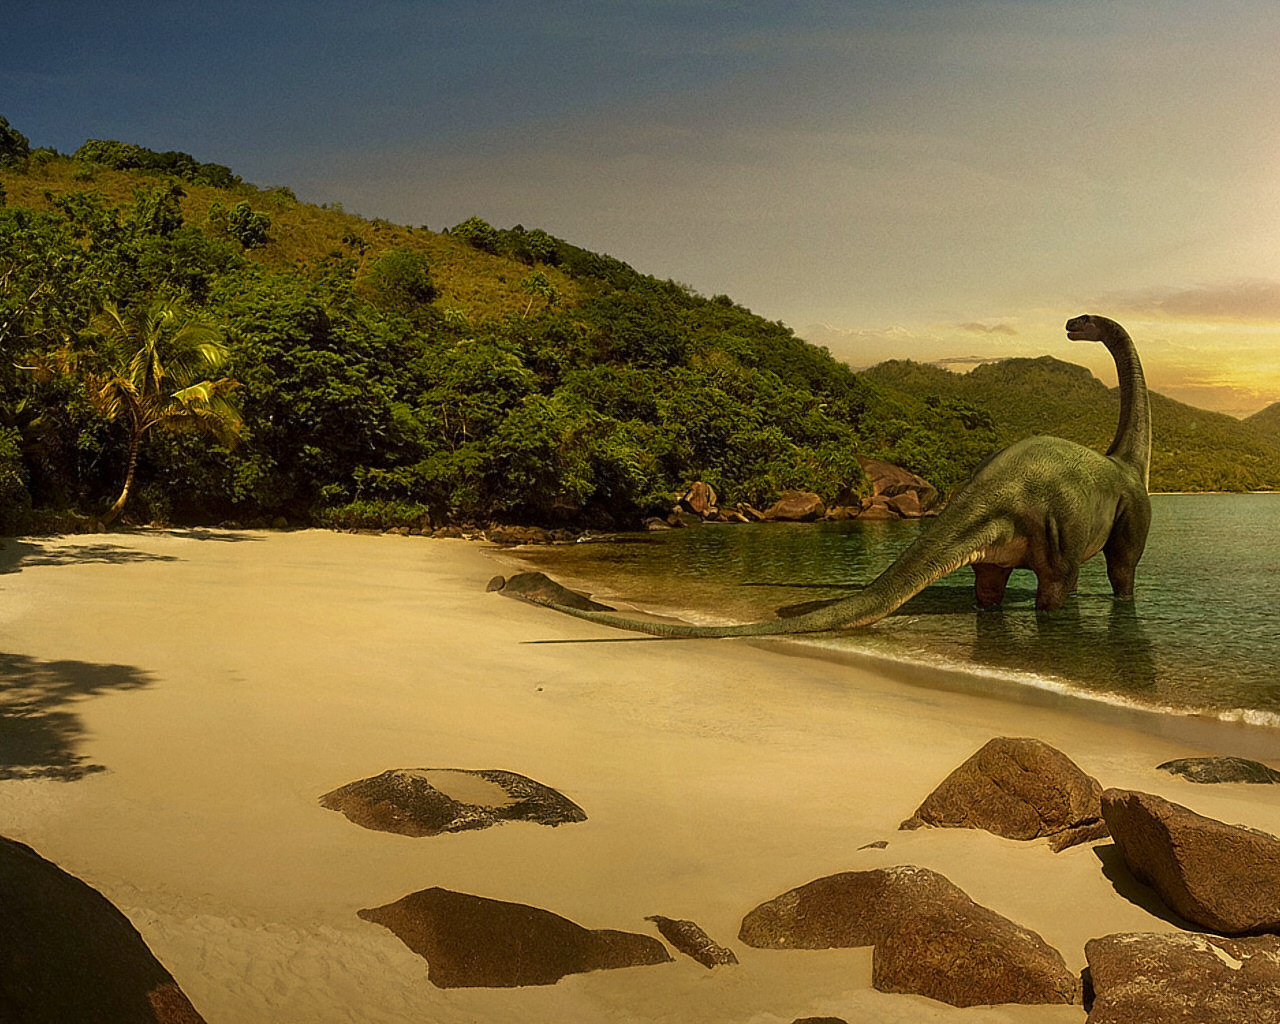 Динозавр стоит в воде